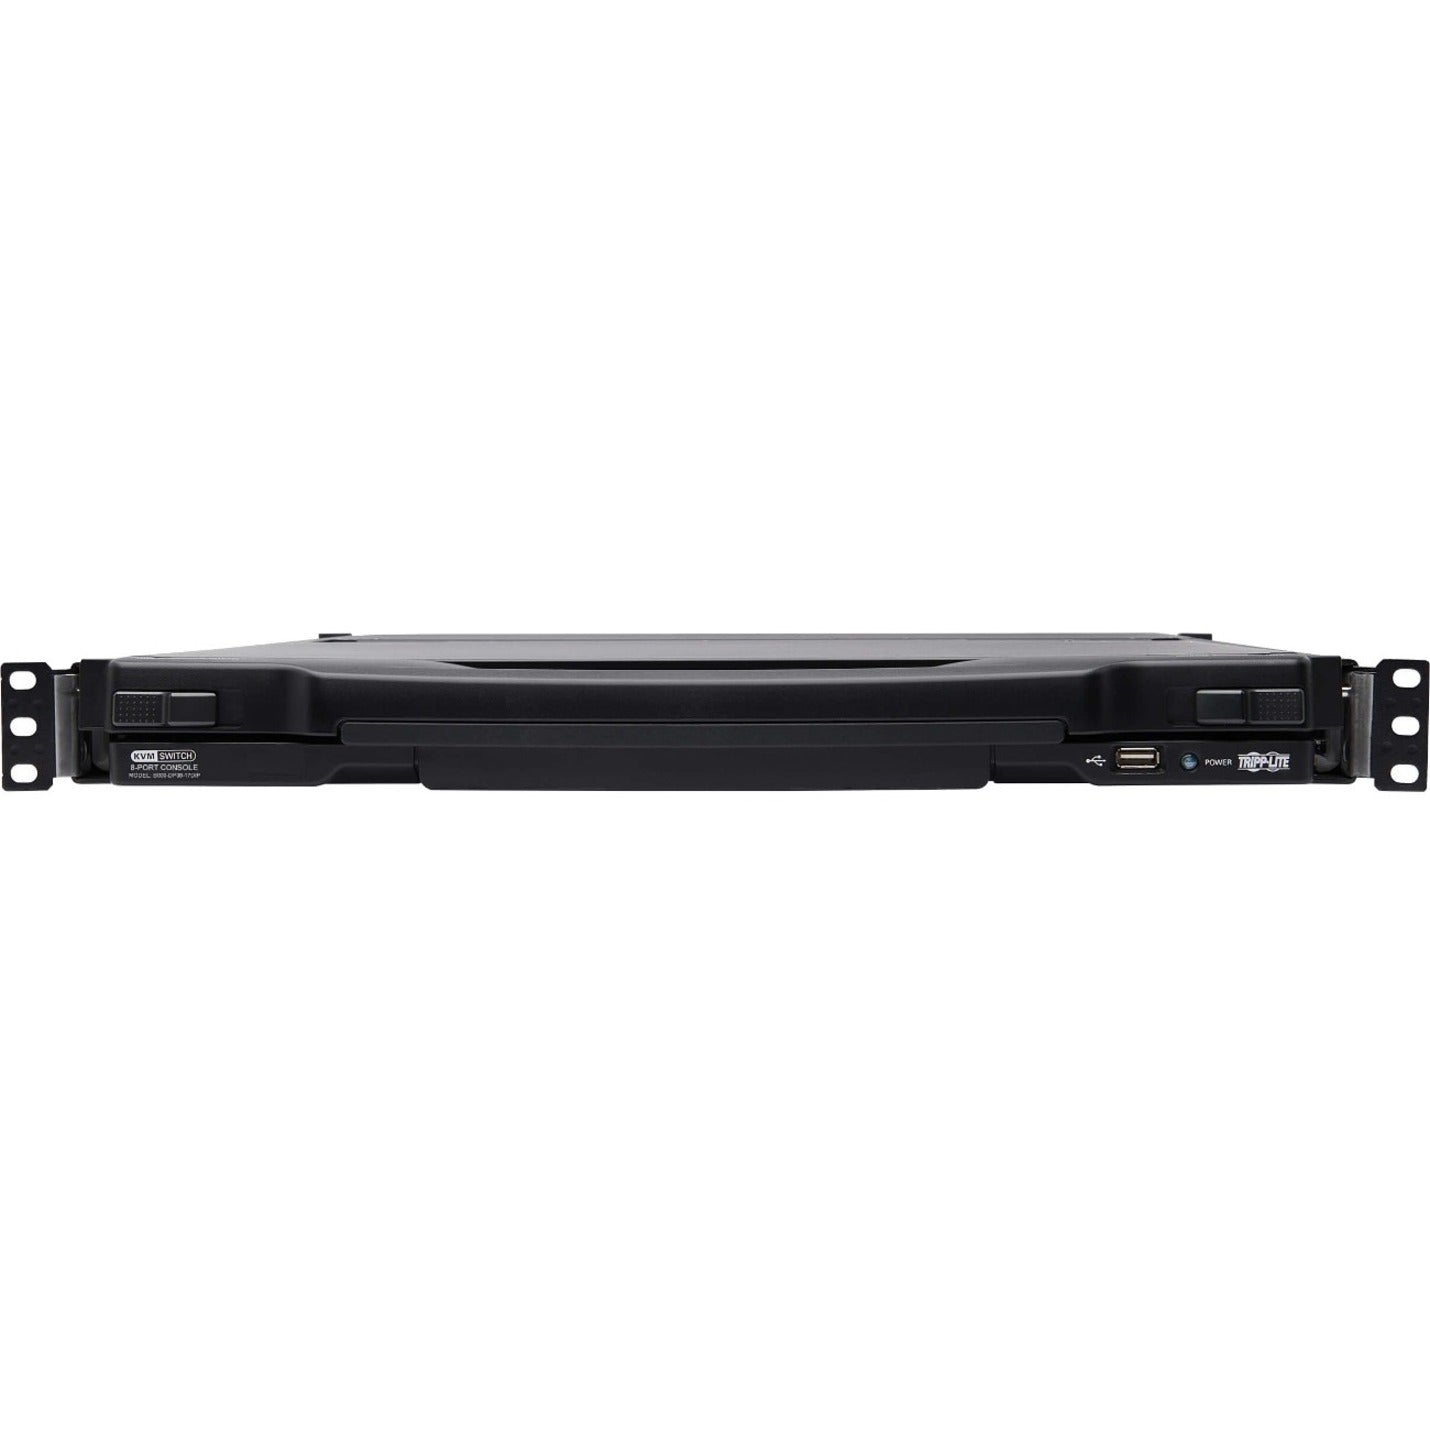 Tripp Lite B030-DP08-17DIP 8-Port DisplayPort KVM Switch Console, 17" LCD, Full HD, USB, Mac/PC/Linux